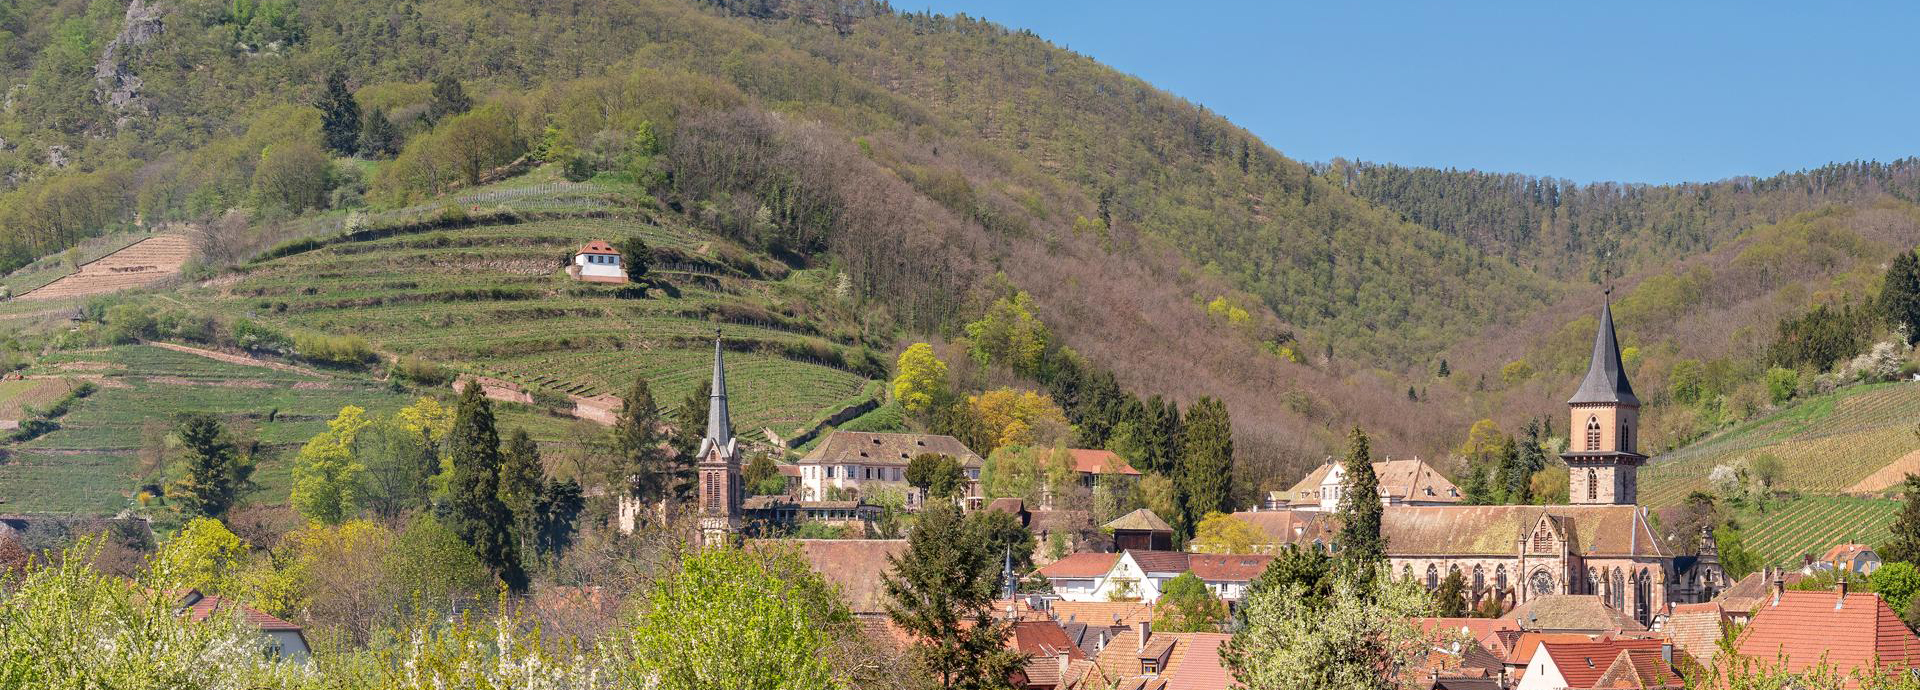 Ribeauvillé, mittelalterliches Dorf im Elsass